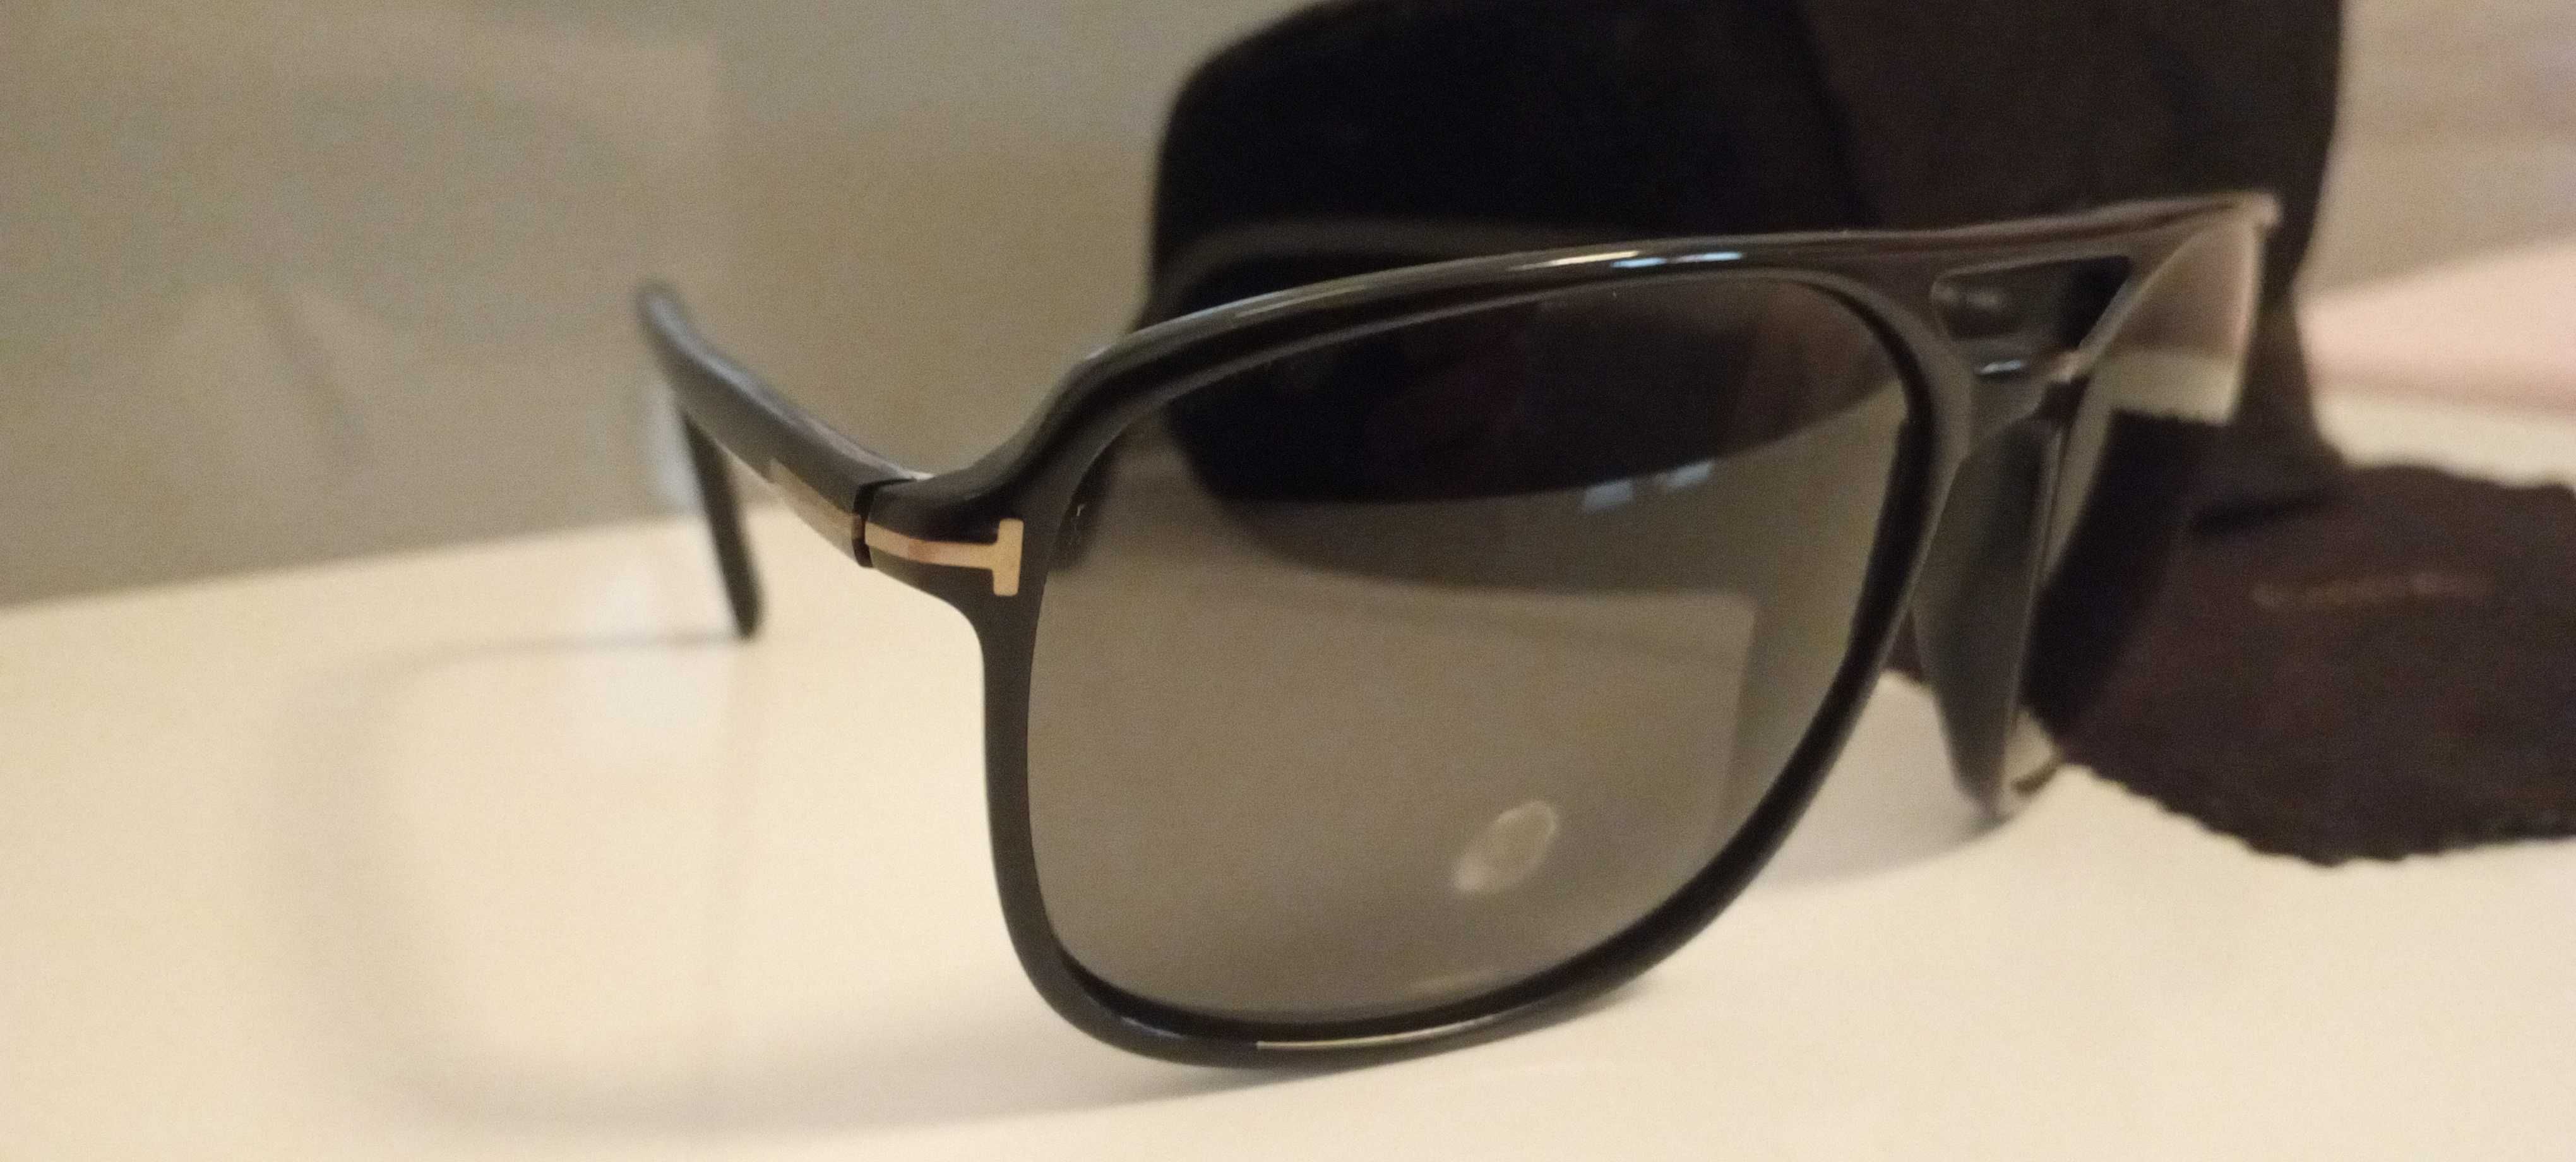 Óculos de Sol Tom Ford